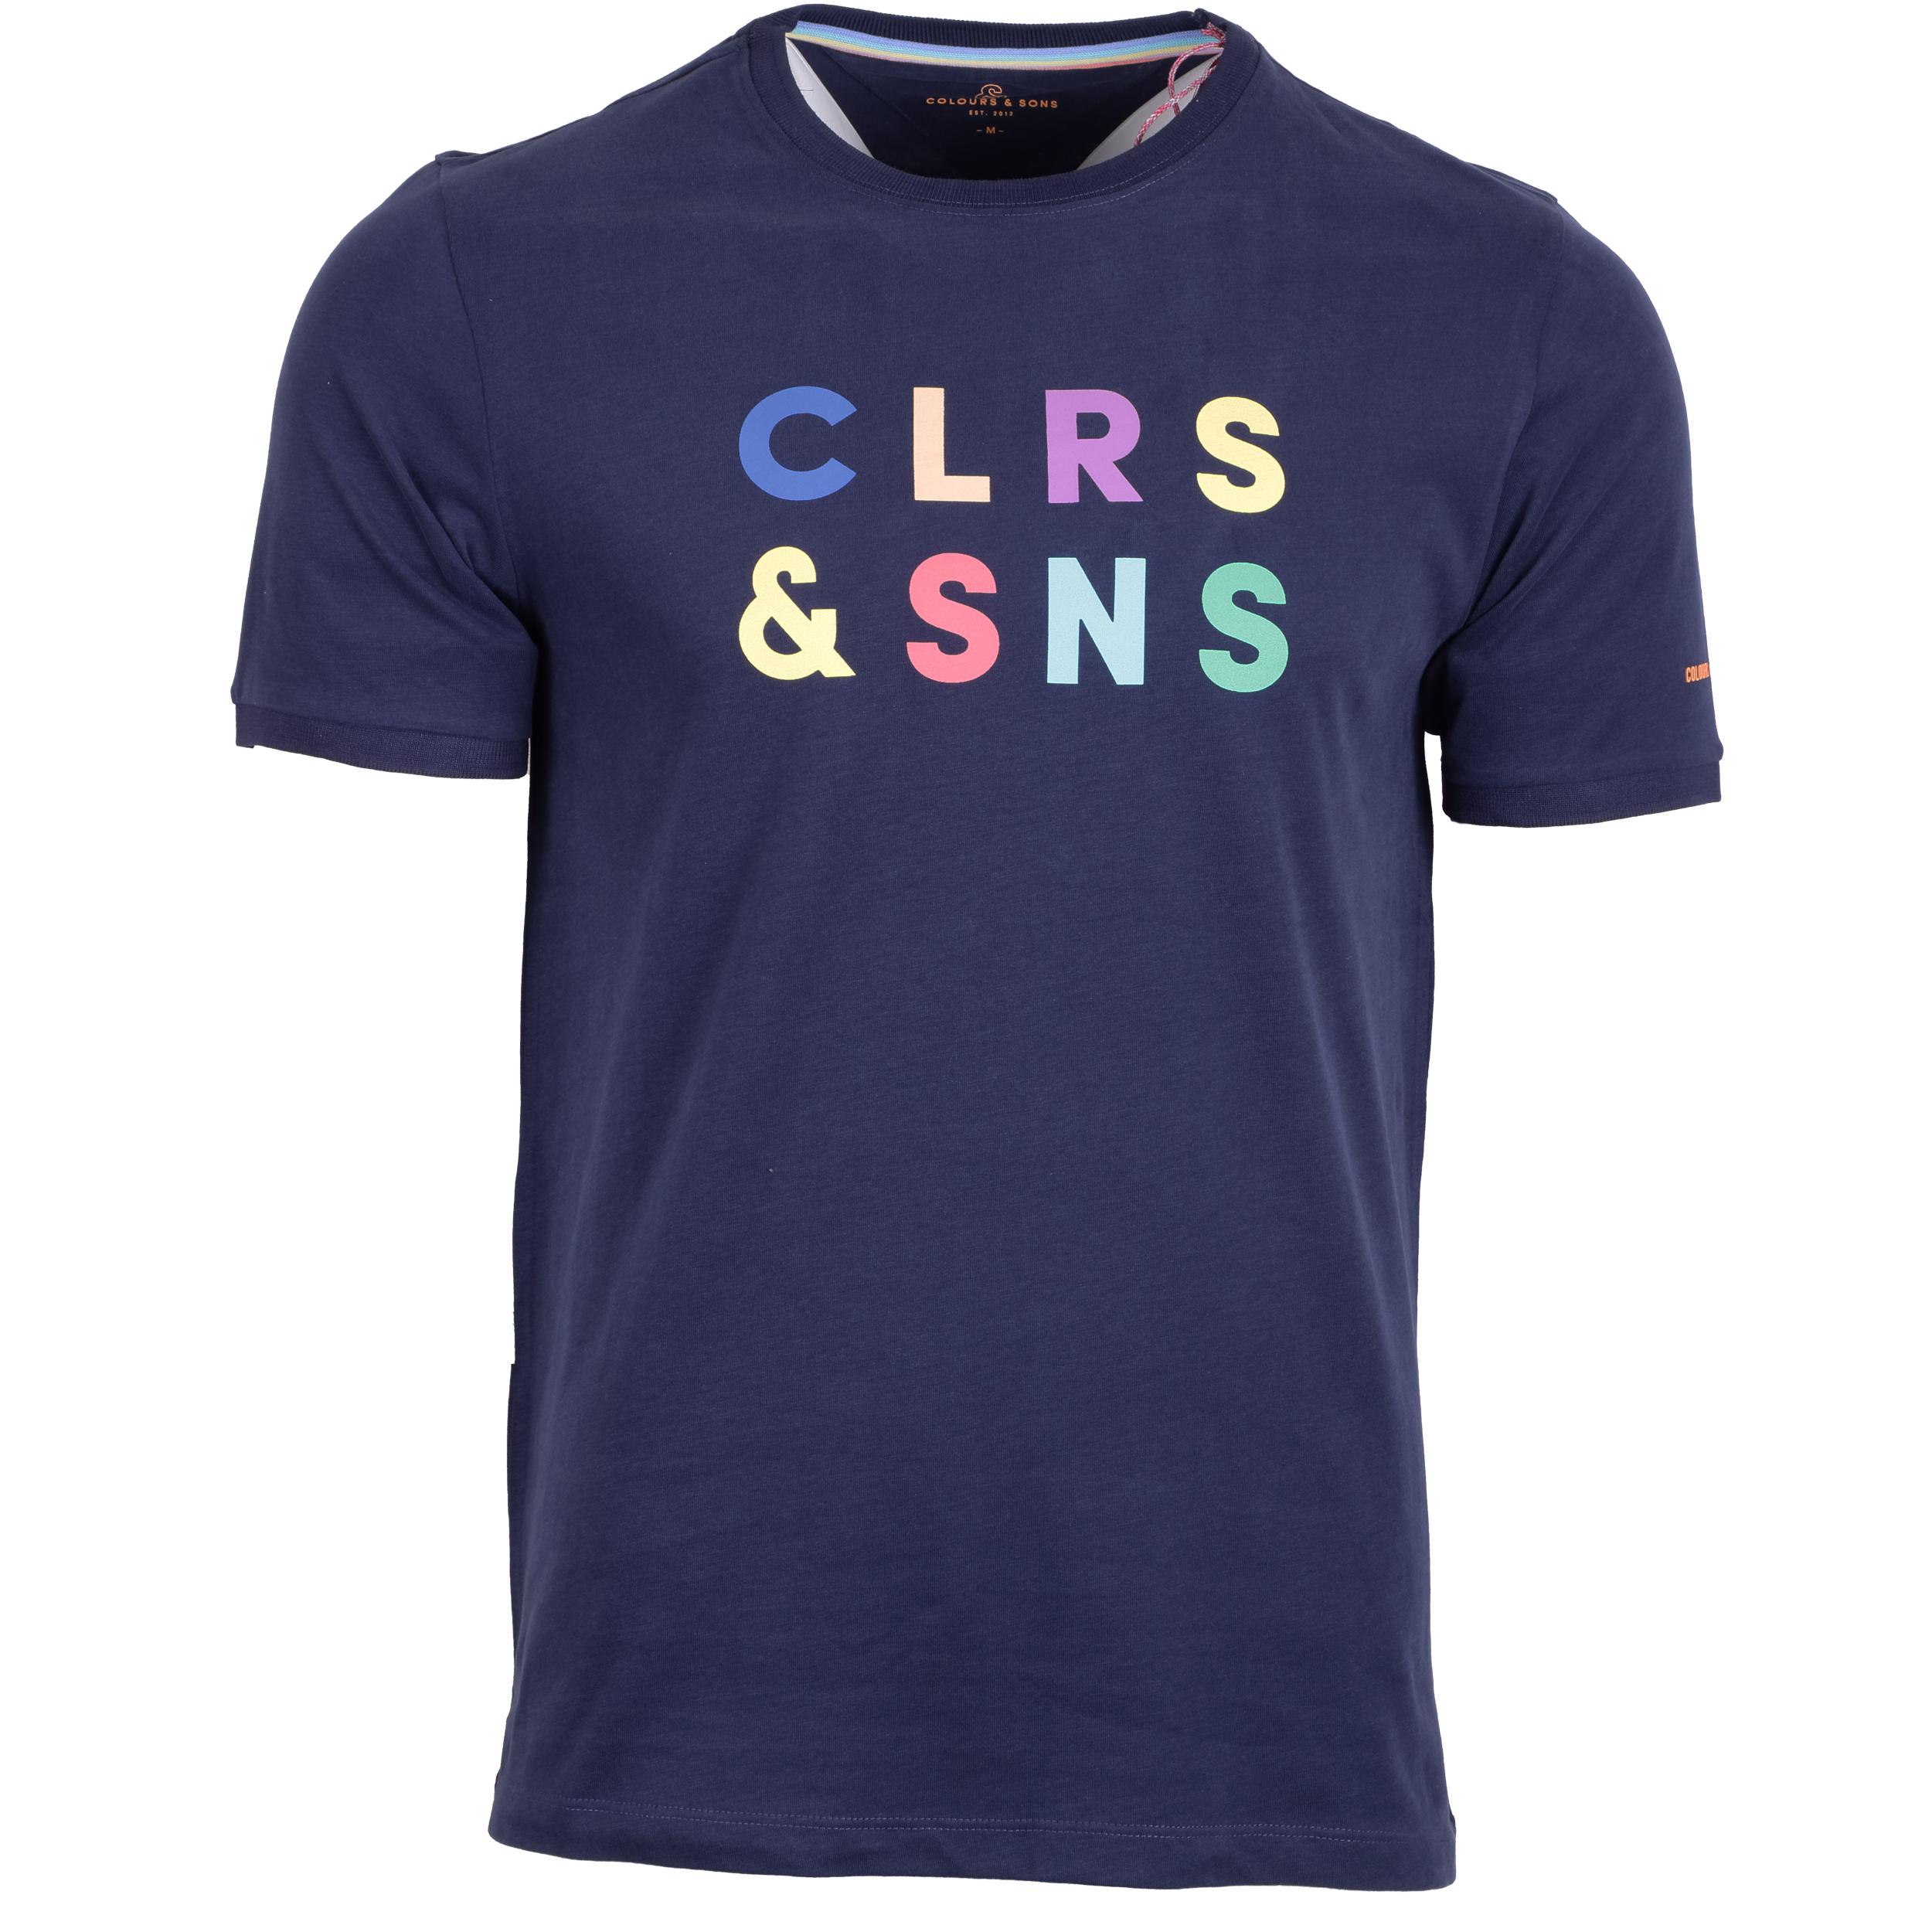 Colours & Sons Herren T-Shirt front Print M blau